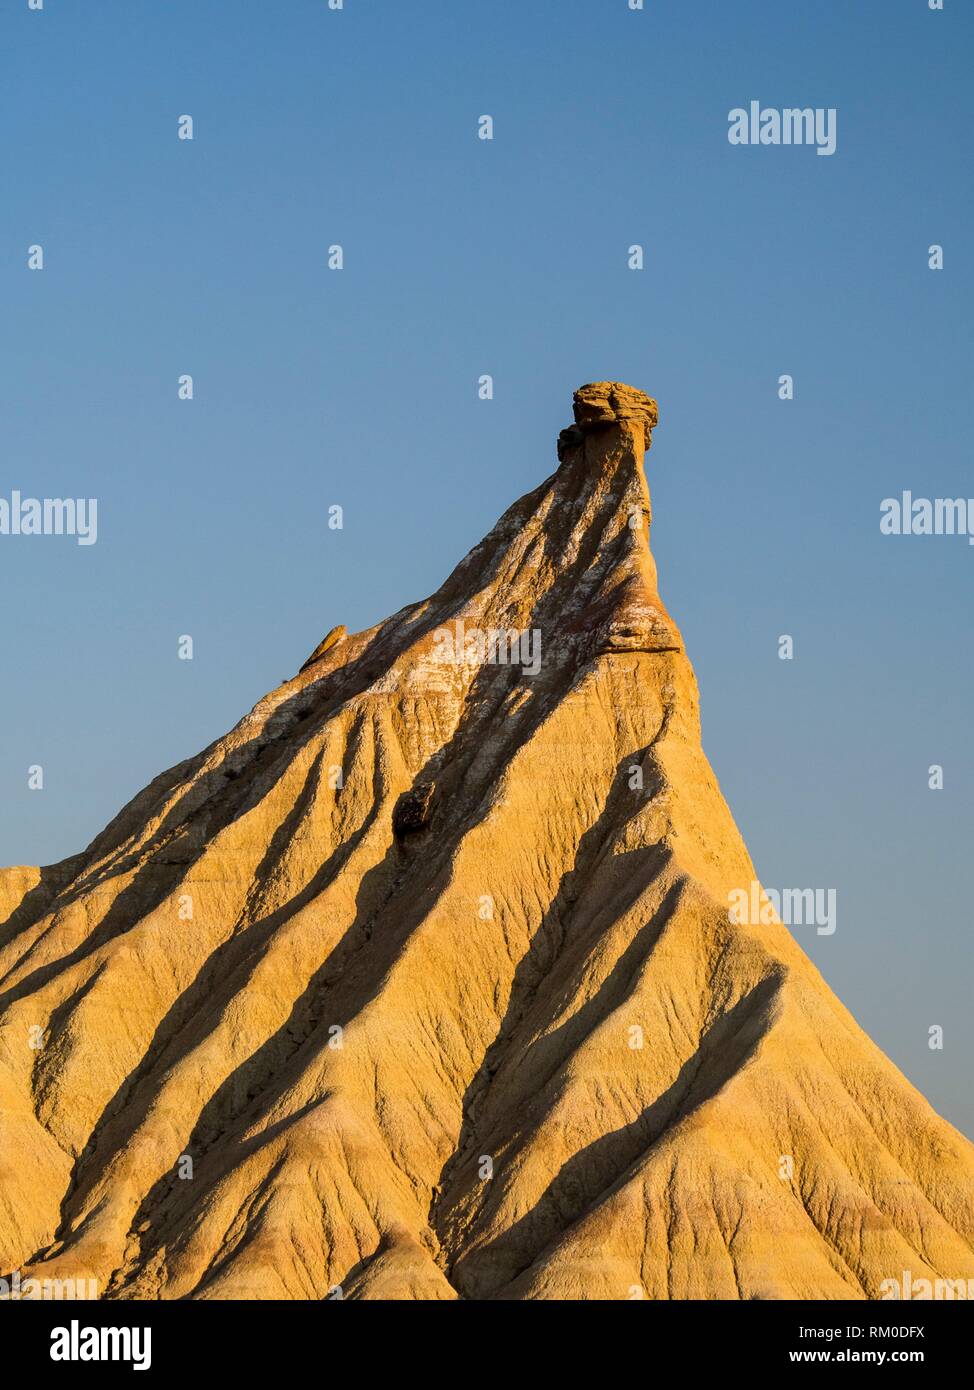 Formazione di roccia nella Bardena Blanca area delle Bardenas Riales parco naturale, Navarra, Spagna Foto Stock